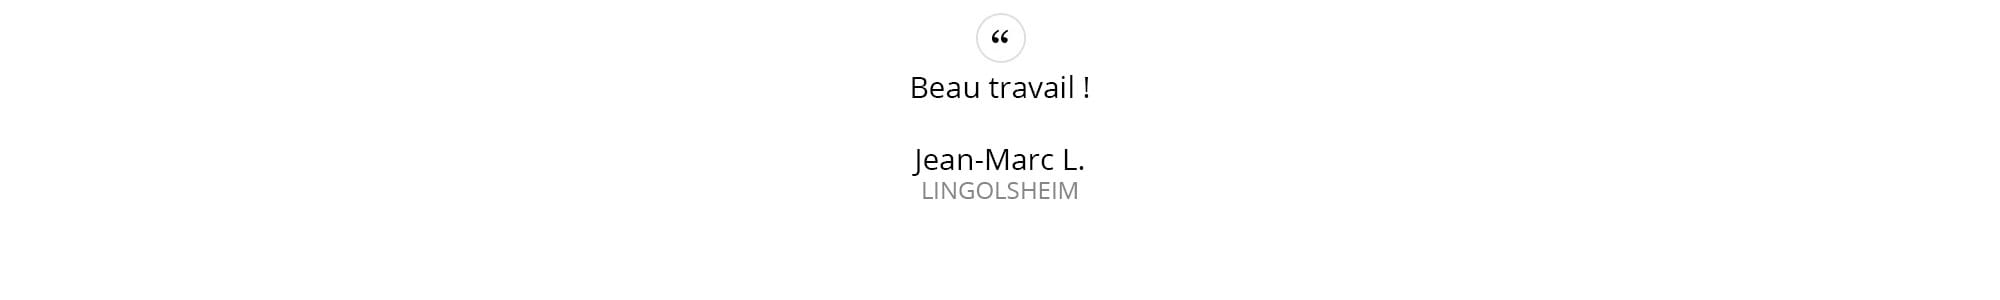 Jean-Marc-L.---LINGOLSHEIM